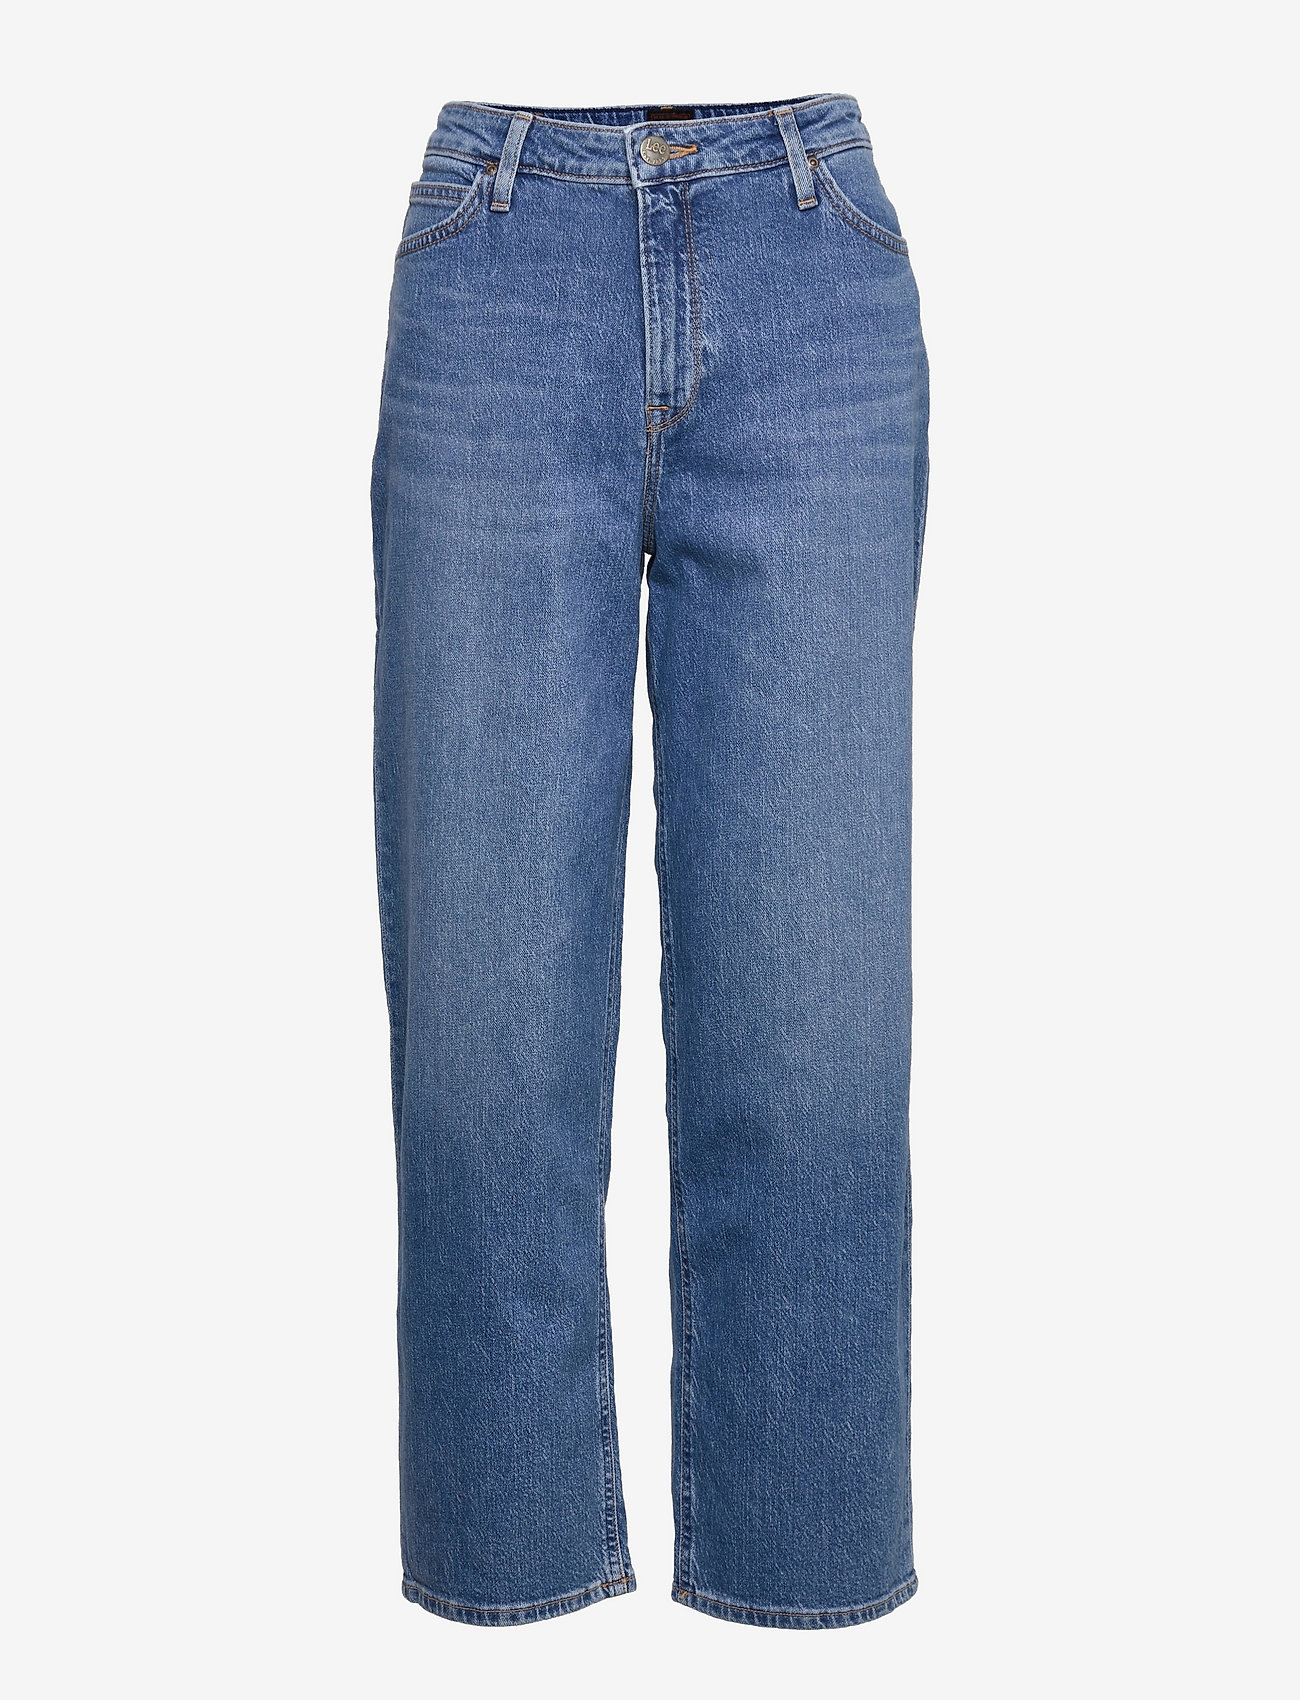 Lee Jeans - WIDE LEG LONG - wide leg jeans - used alton - 0